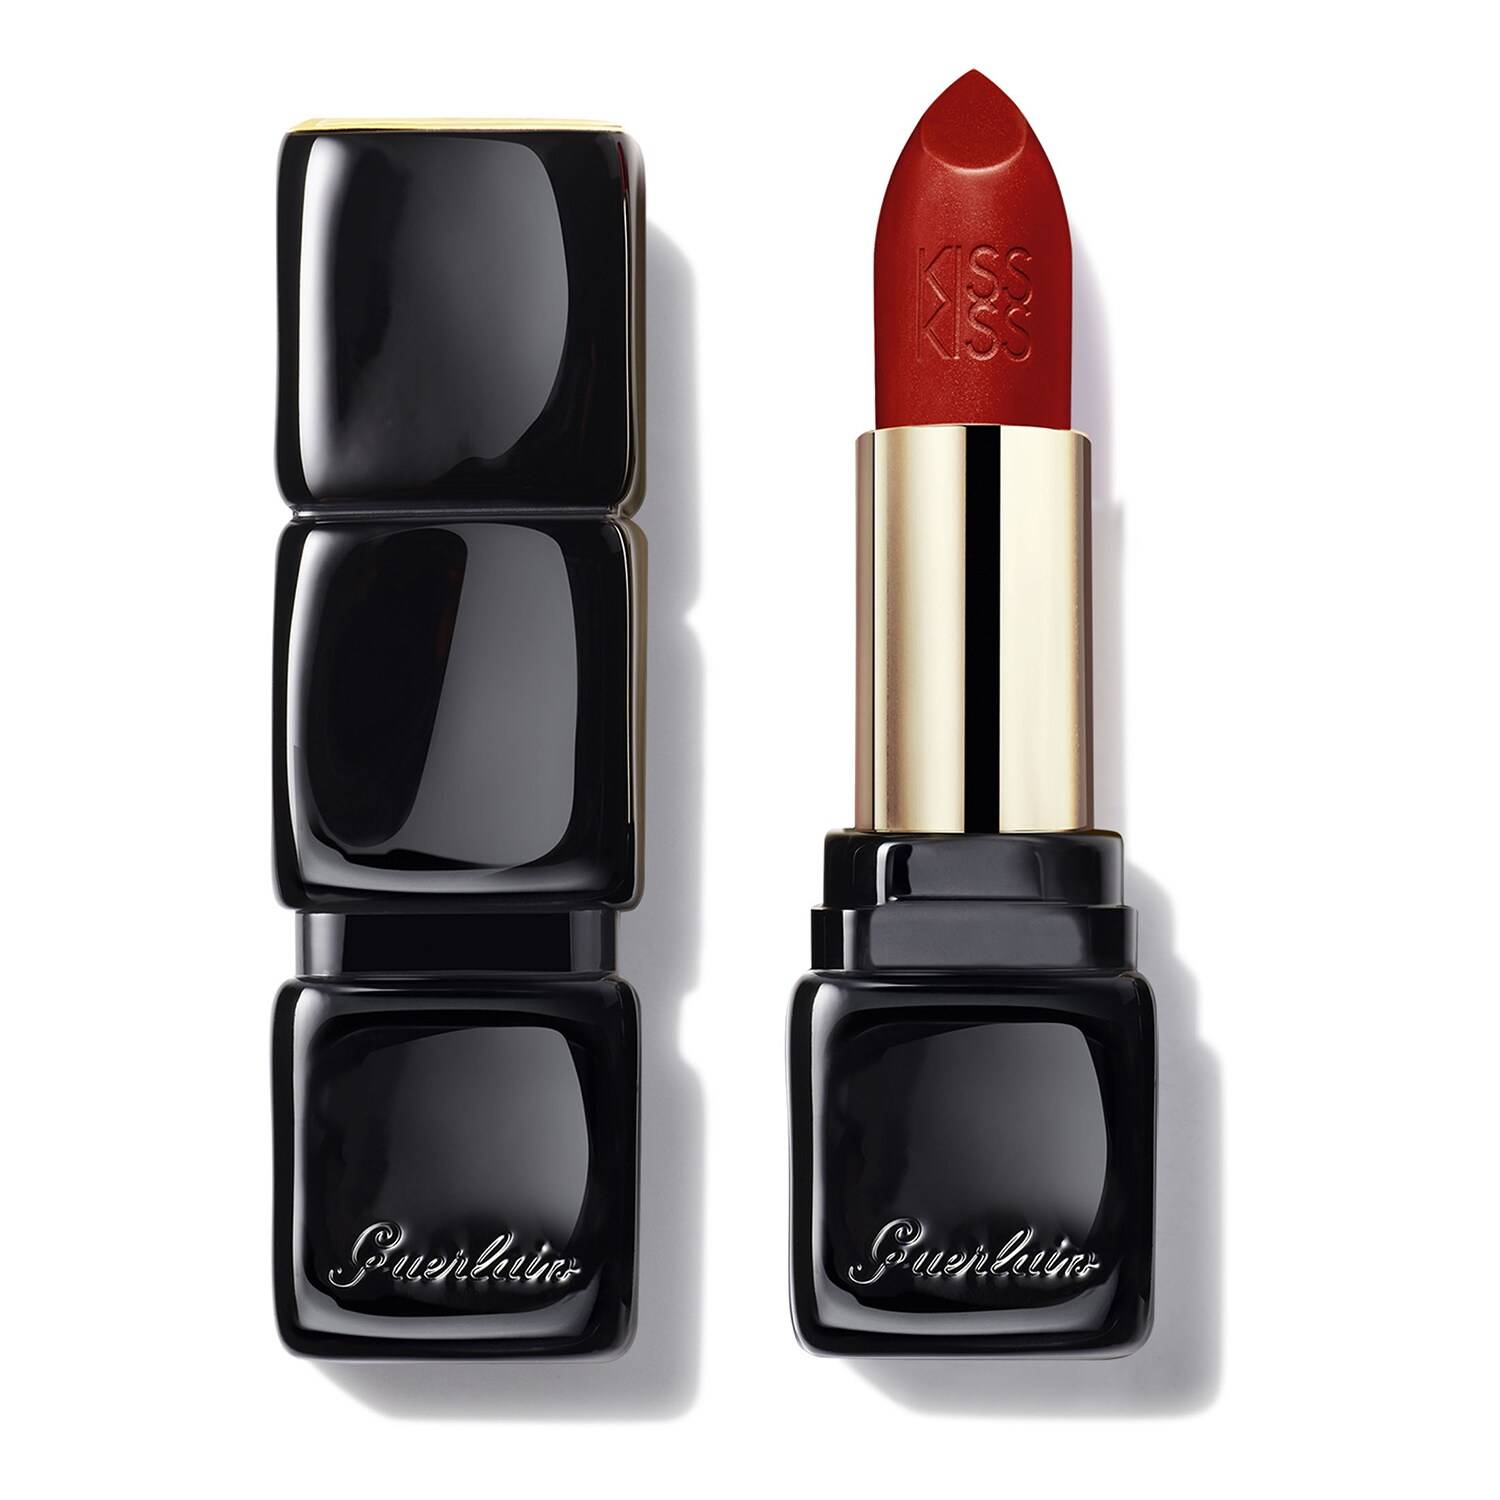 guerlain kisskiss lipstick 3.5g 320 red insolence